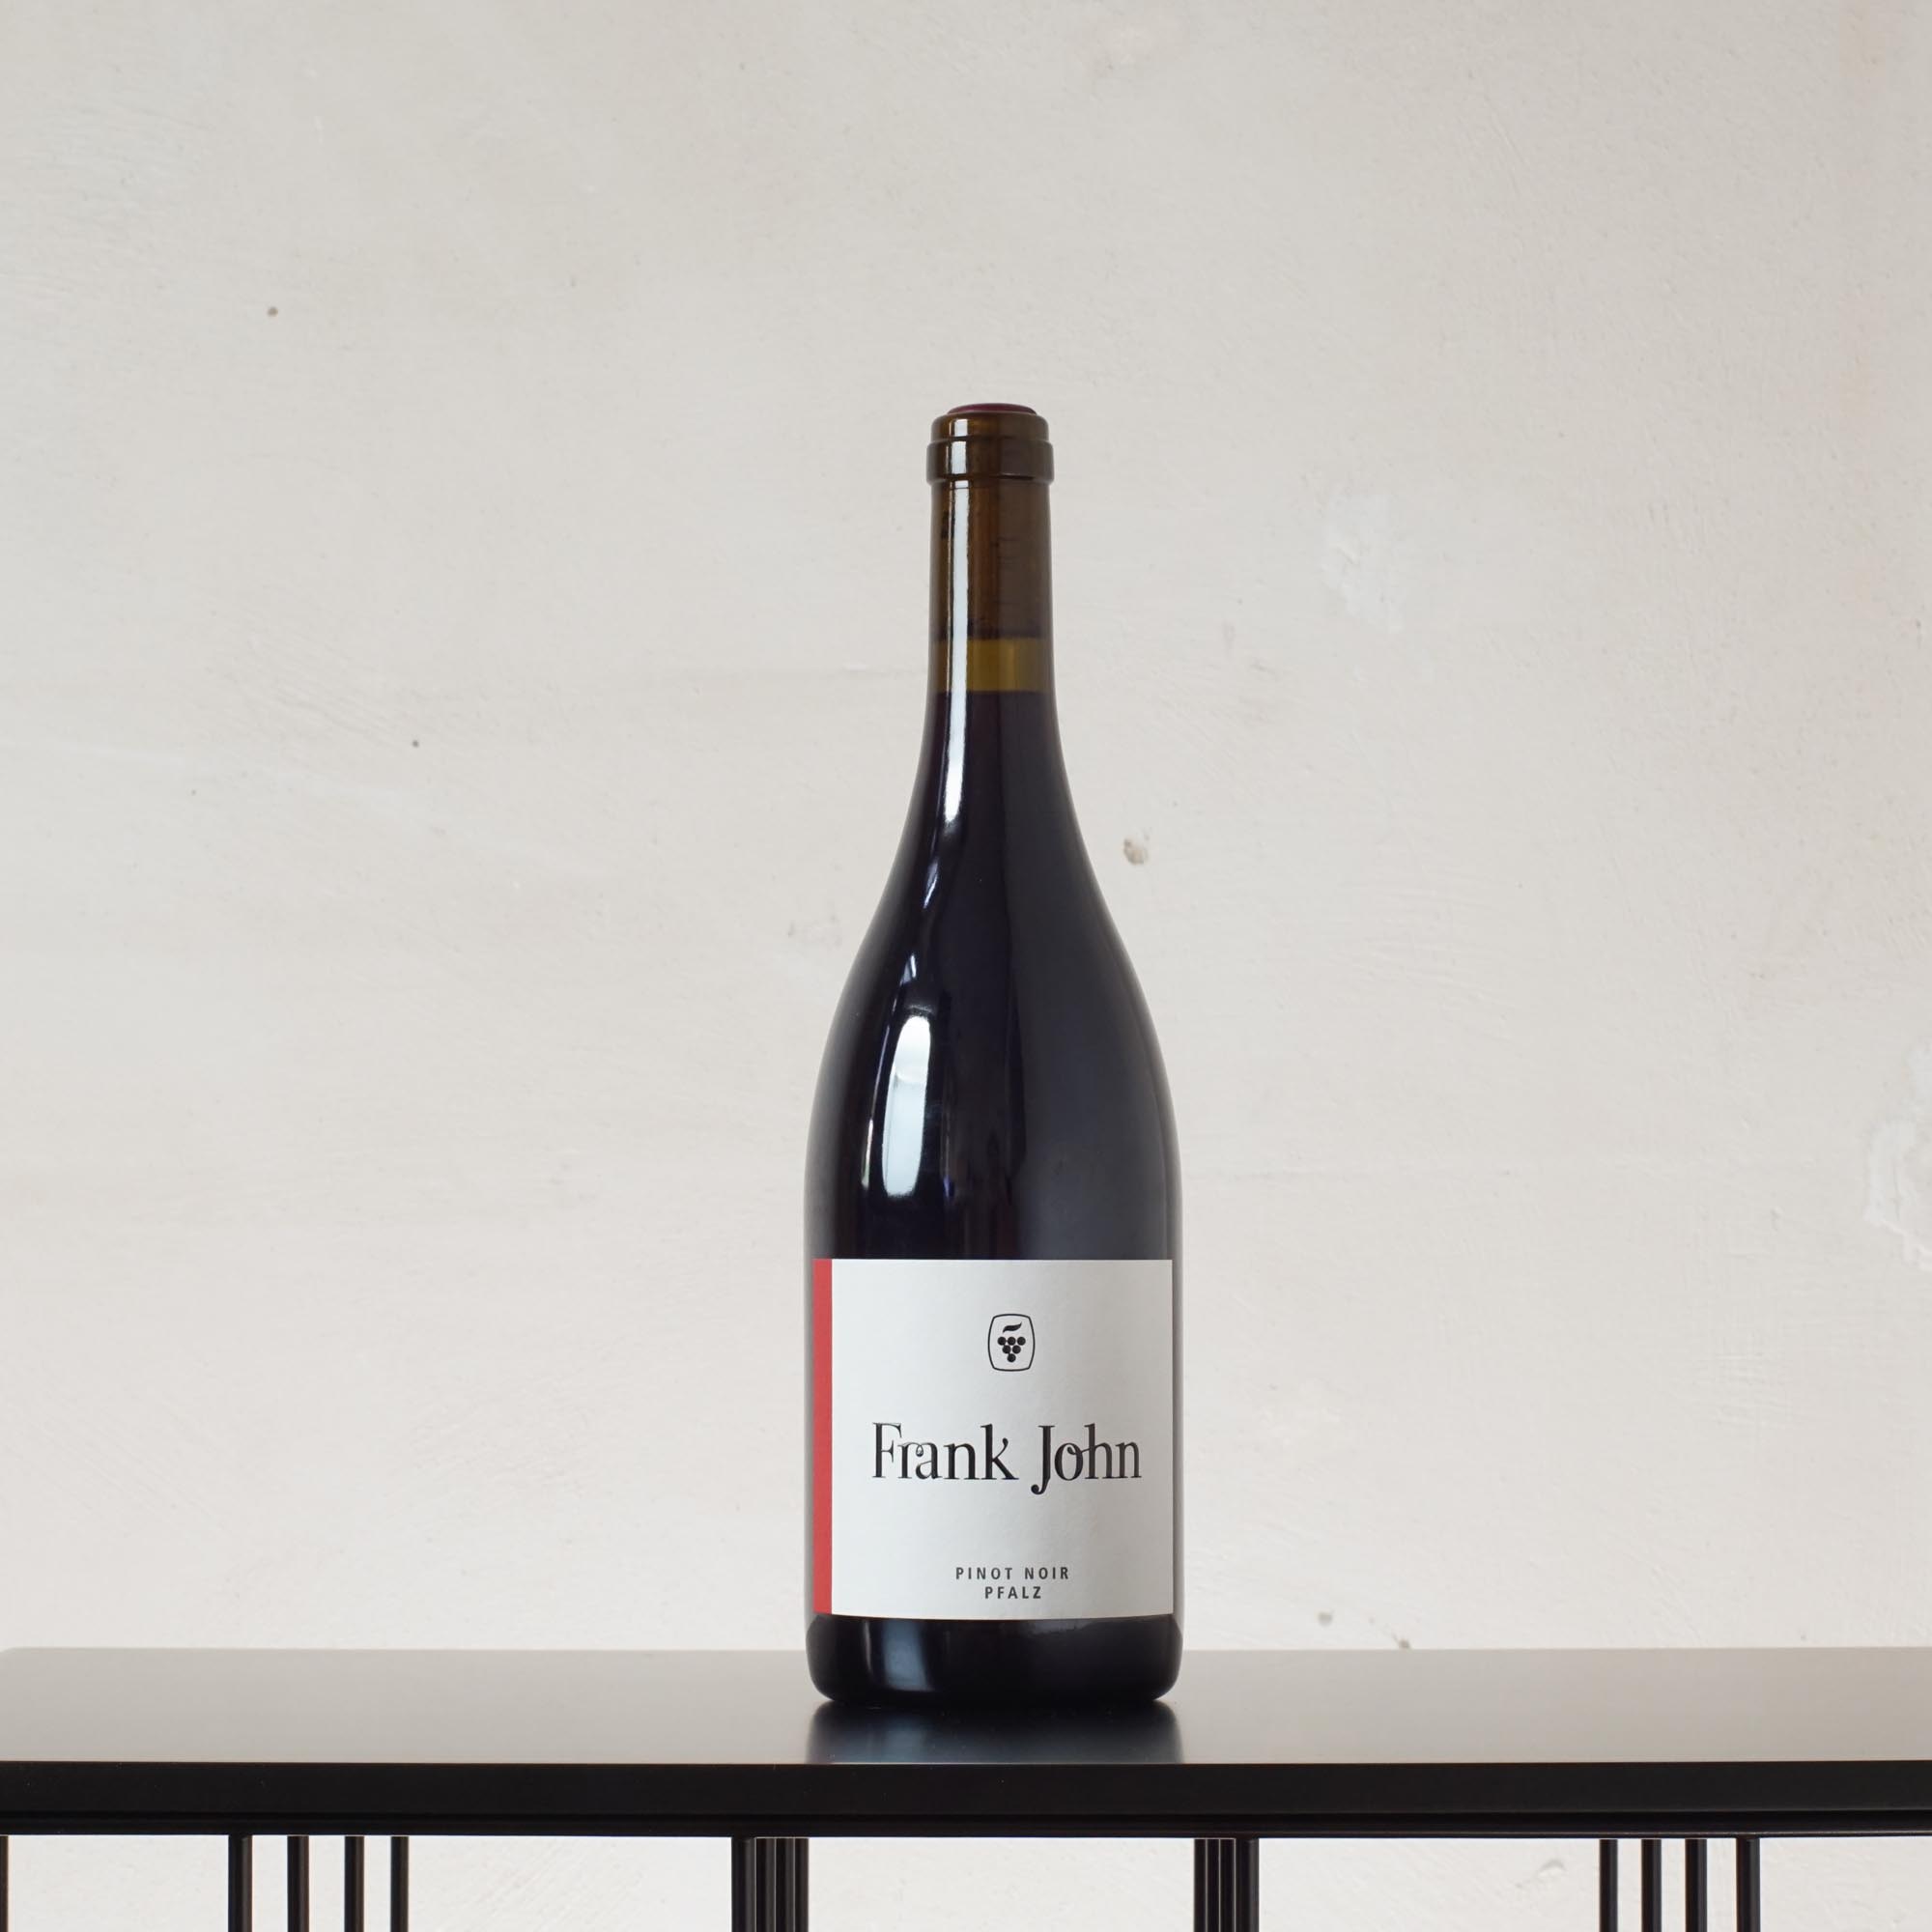 Kalkstein Pinot Noir Qualitätswein trocken 2020 ab Mitte Dez lieferbar